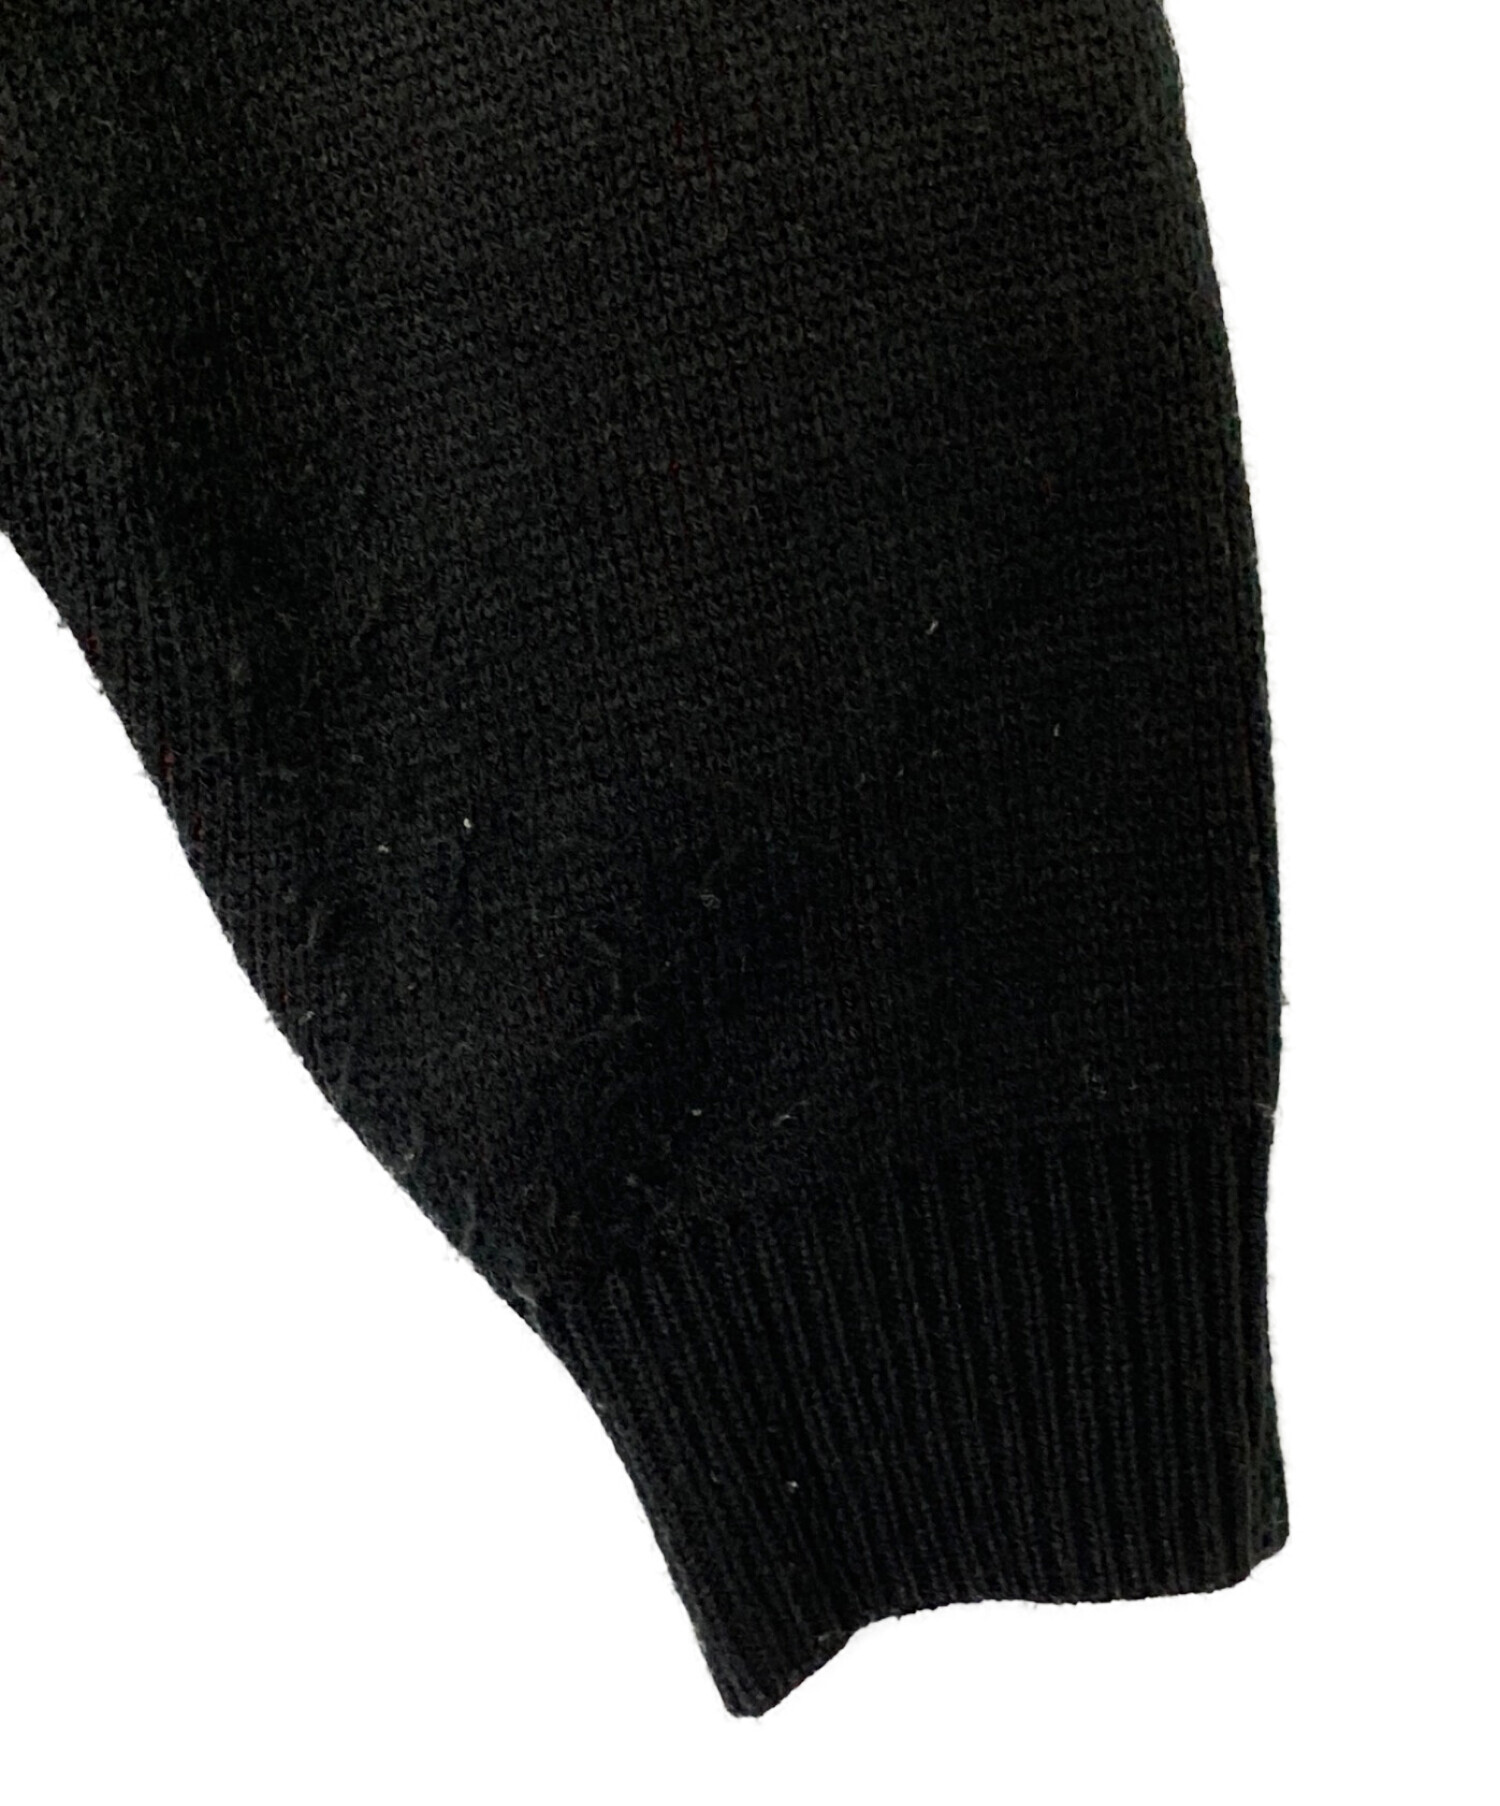 SUPREME (シュプリーム) THRASHER (スラッシャー) Sweater ブラック×レッド サイズ:M